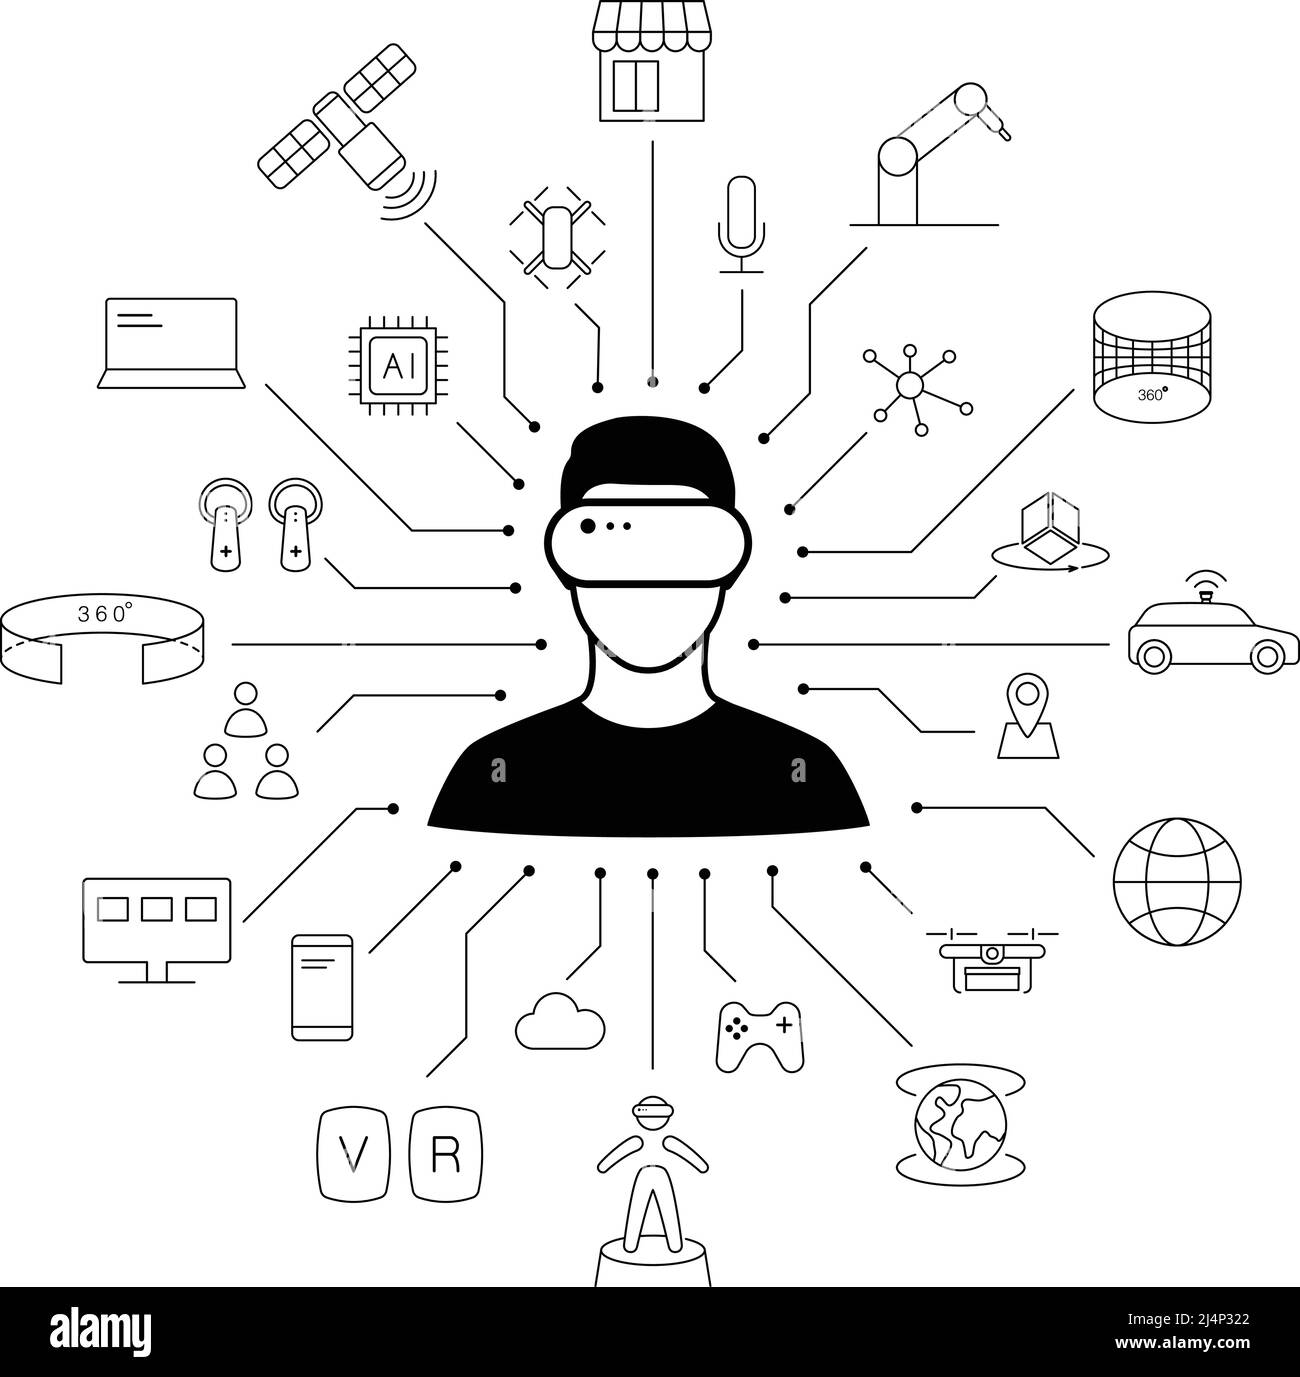 Mann trägt Virtual Reality Headset im Zentrum von VR-Ikonen, zukünftige Technologie-Konzept. Stock Vektor